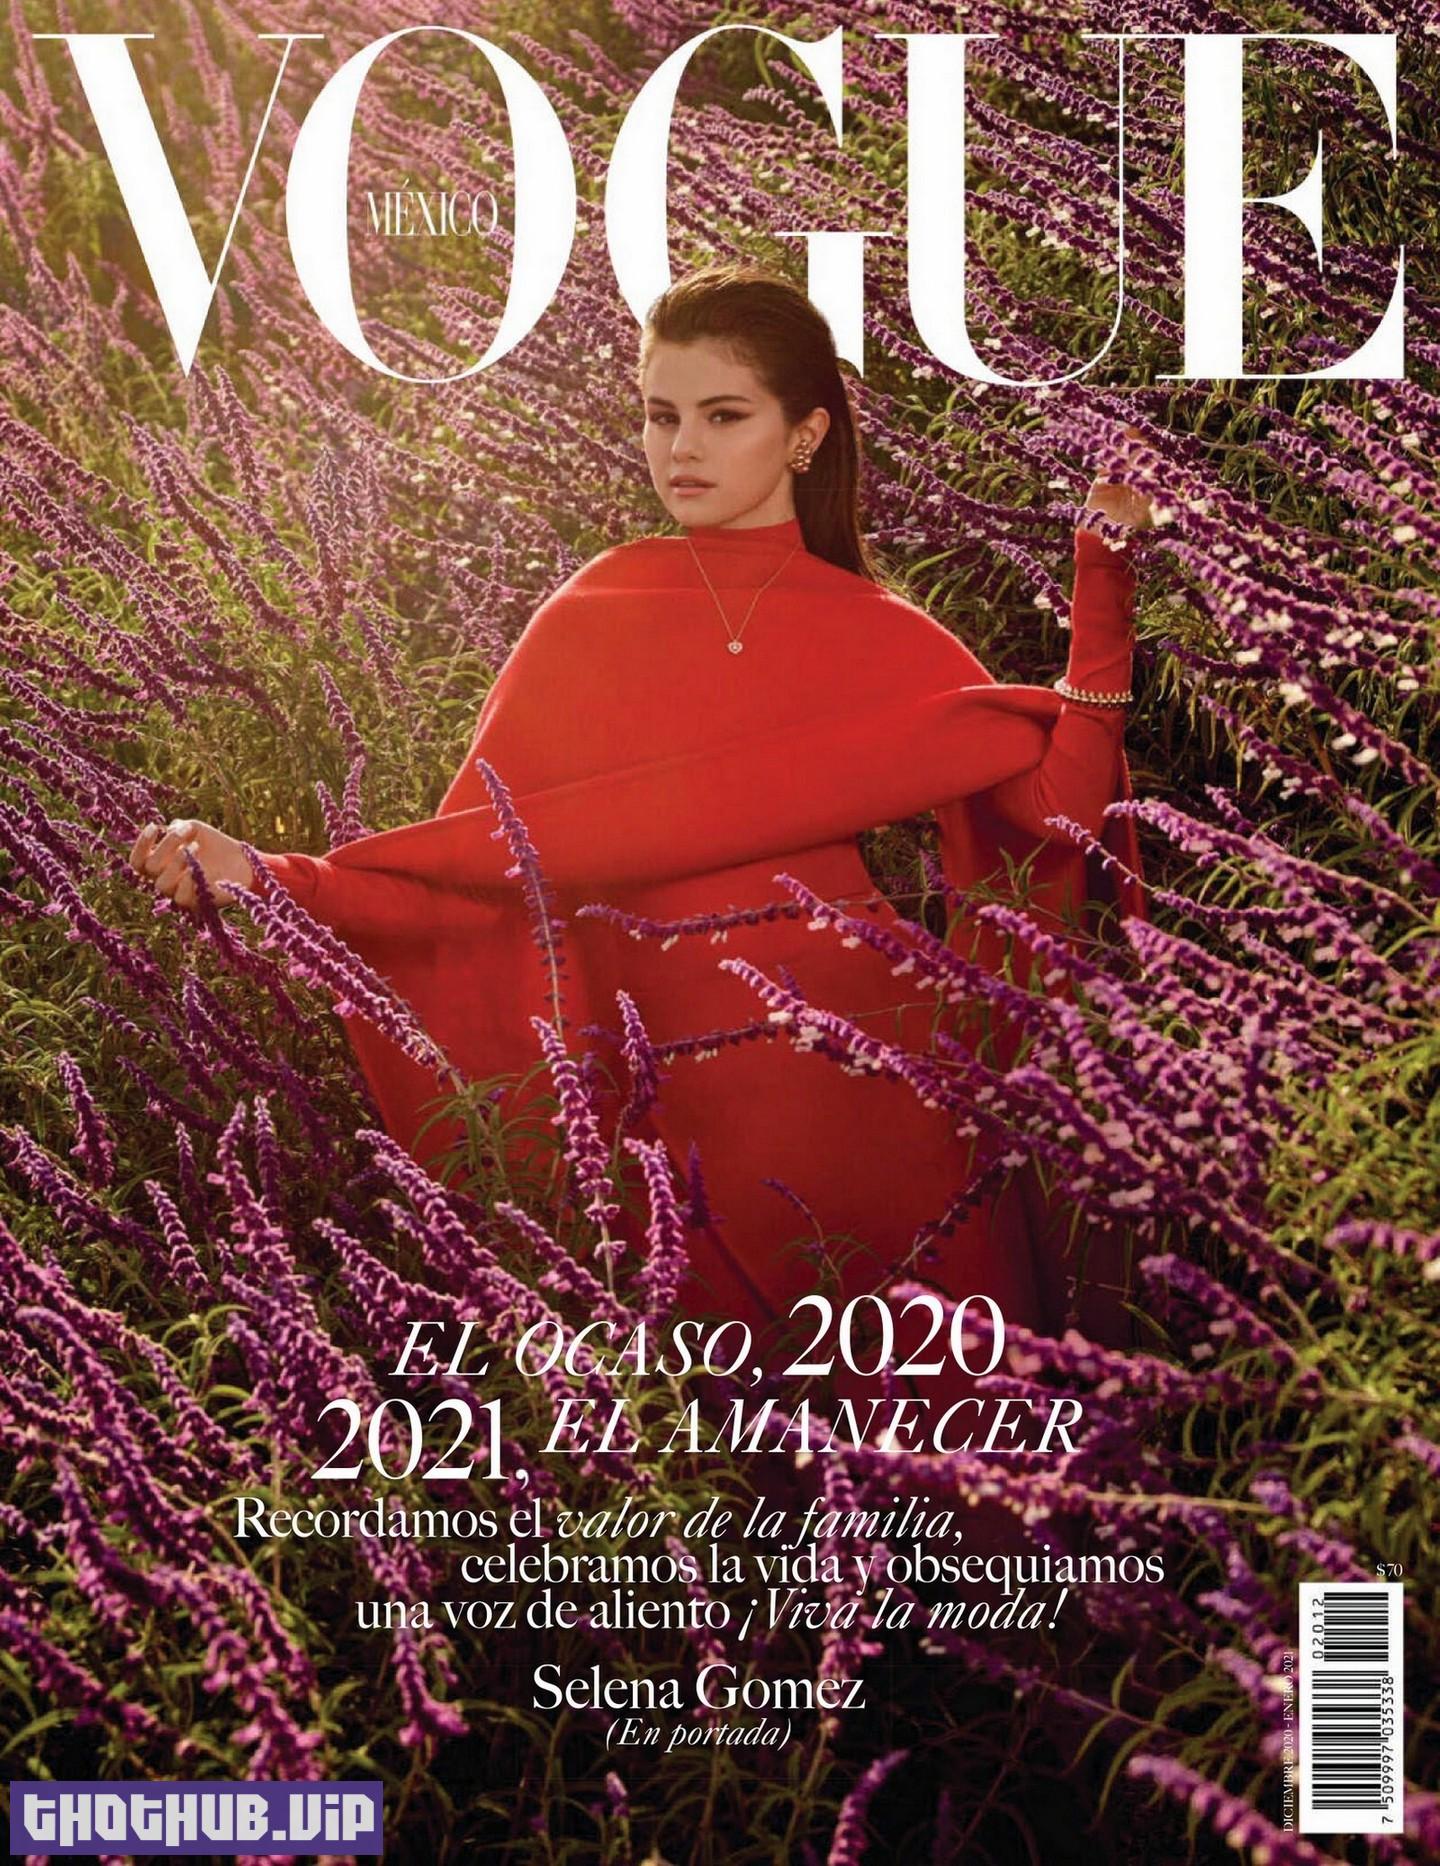 Selena Gomez Sexy Vogue 2020 8 Photos